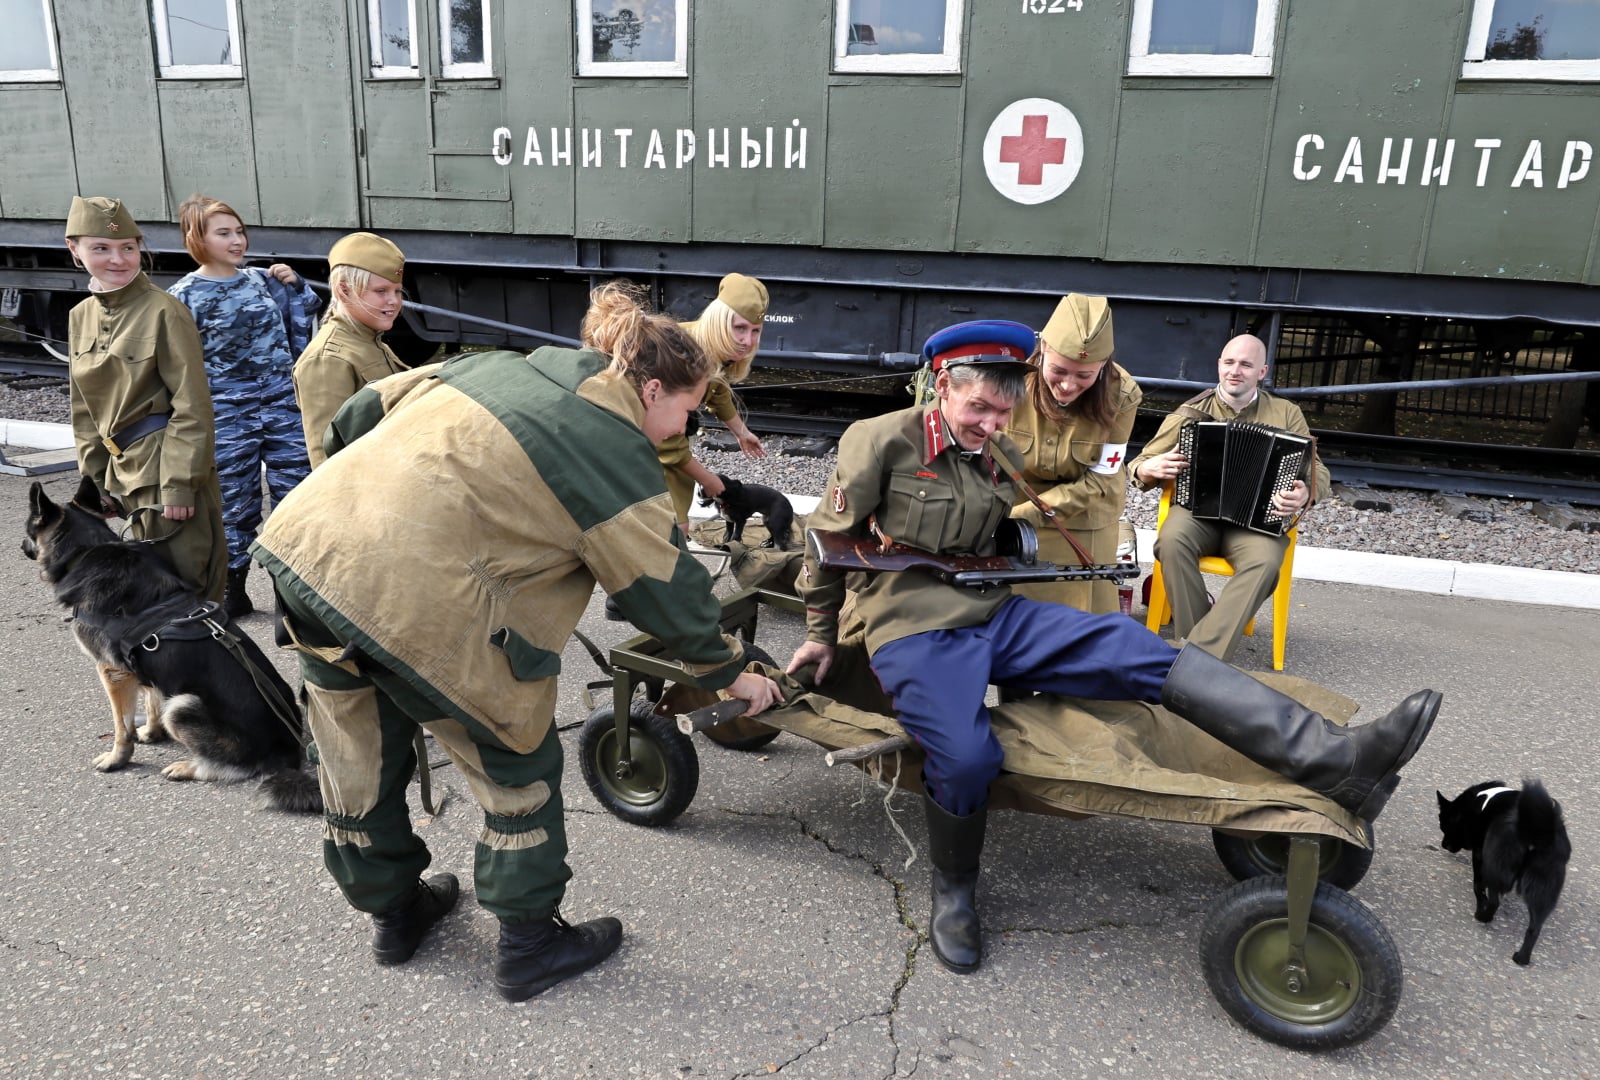 Ludzie ubrani w mundury z II Wojny Światowej przedstawiają scenę z psami podczas obchodów Dnia Psa w Muzeum Zwycięstwa w Moskwie, Rosja, fot. EPA/YURI KOCHETKOV 
